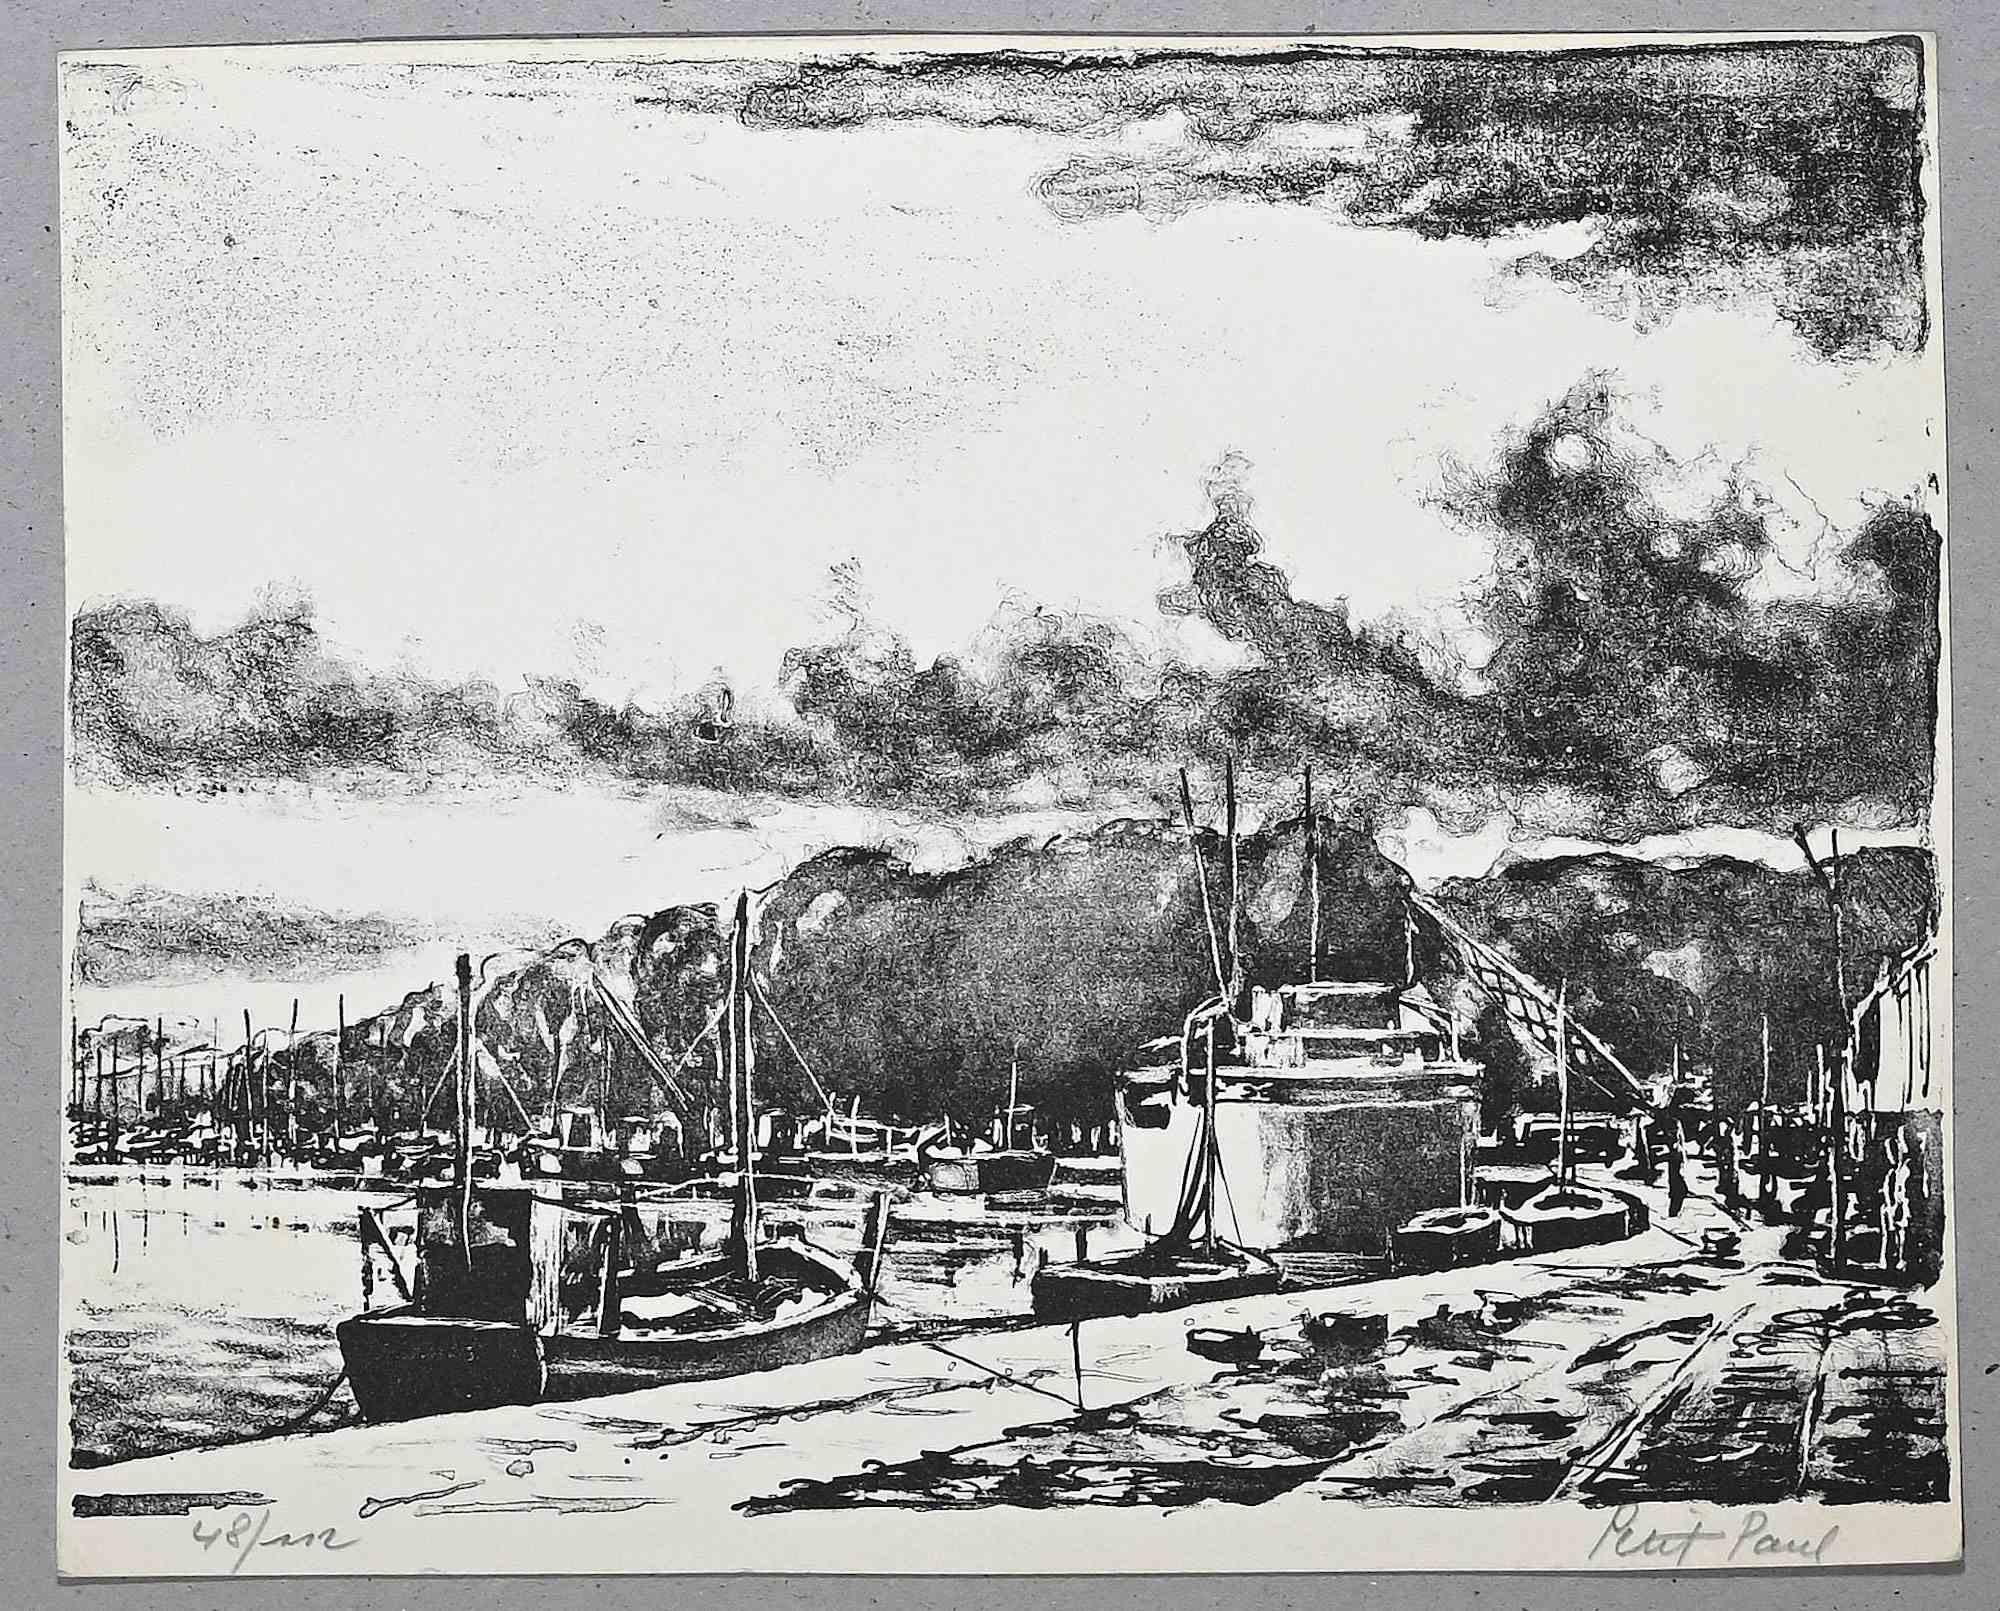 Der Hafen ist eine Original-Lithographie von Paul Petit aus der Mitte des 20. Jahrhunderts.

Handsigniert.

Nummeriert, 48/112

Das Kunstwerk wird mit sicheren Strichen in einer ausgewogenen Komposition dargestellt.